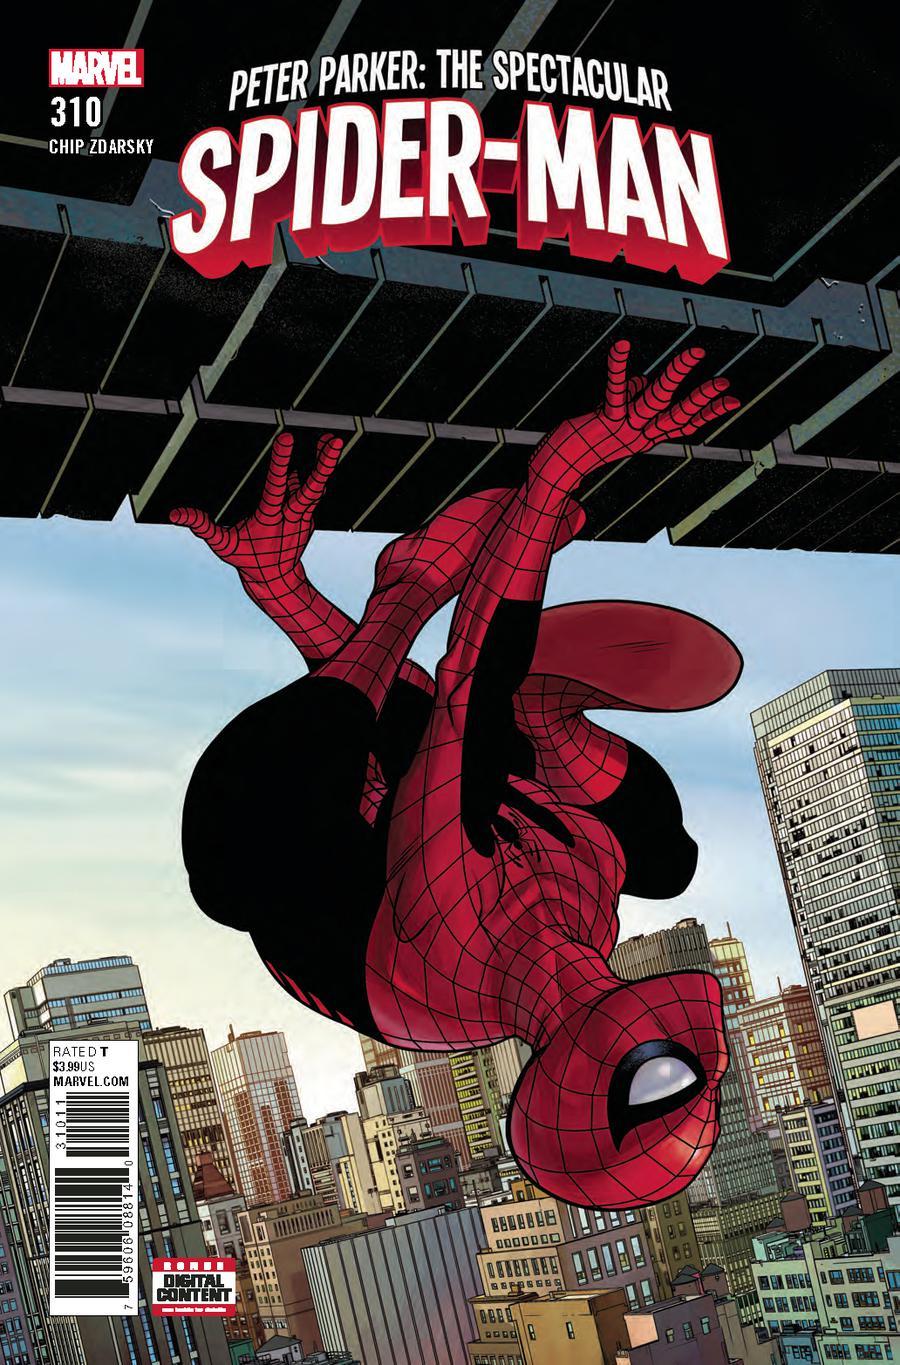 Peter Parker Spectacular Spider-Man Vol. 1 #310